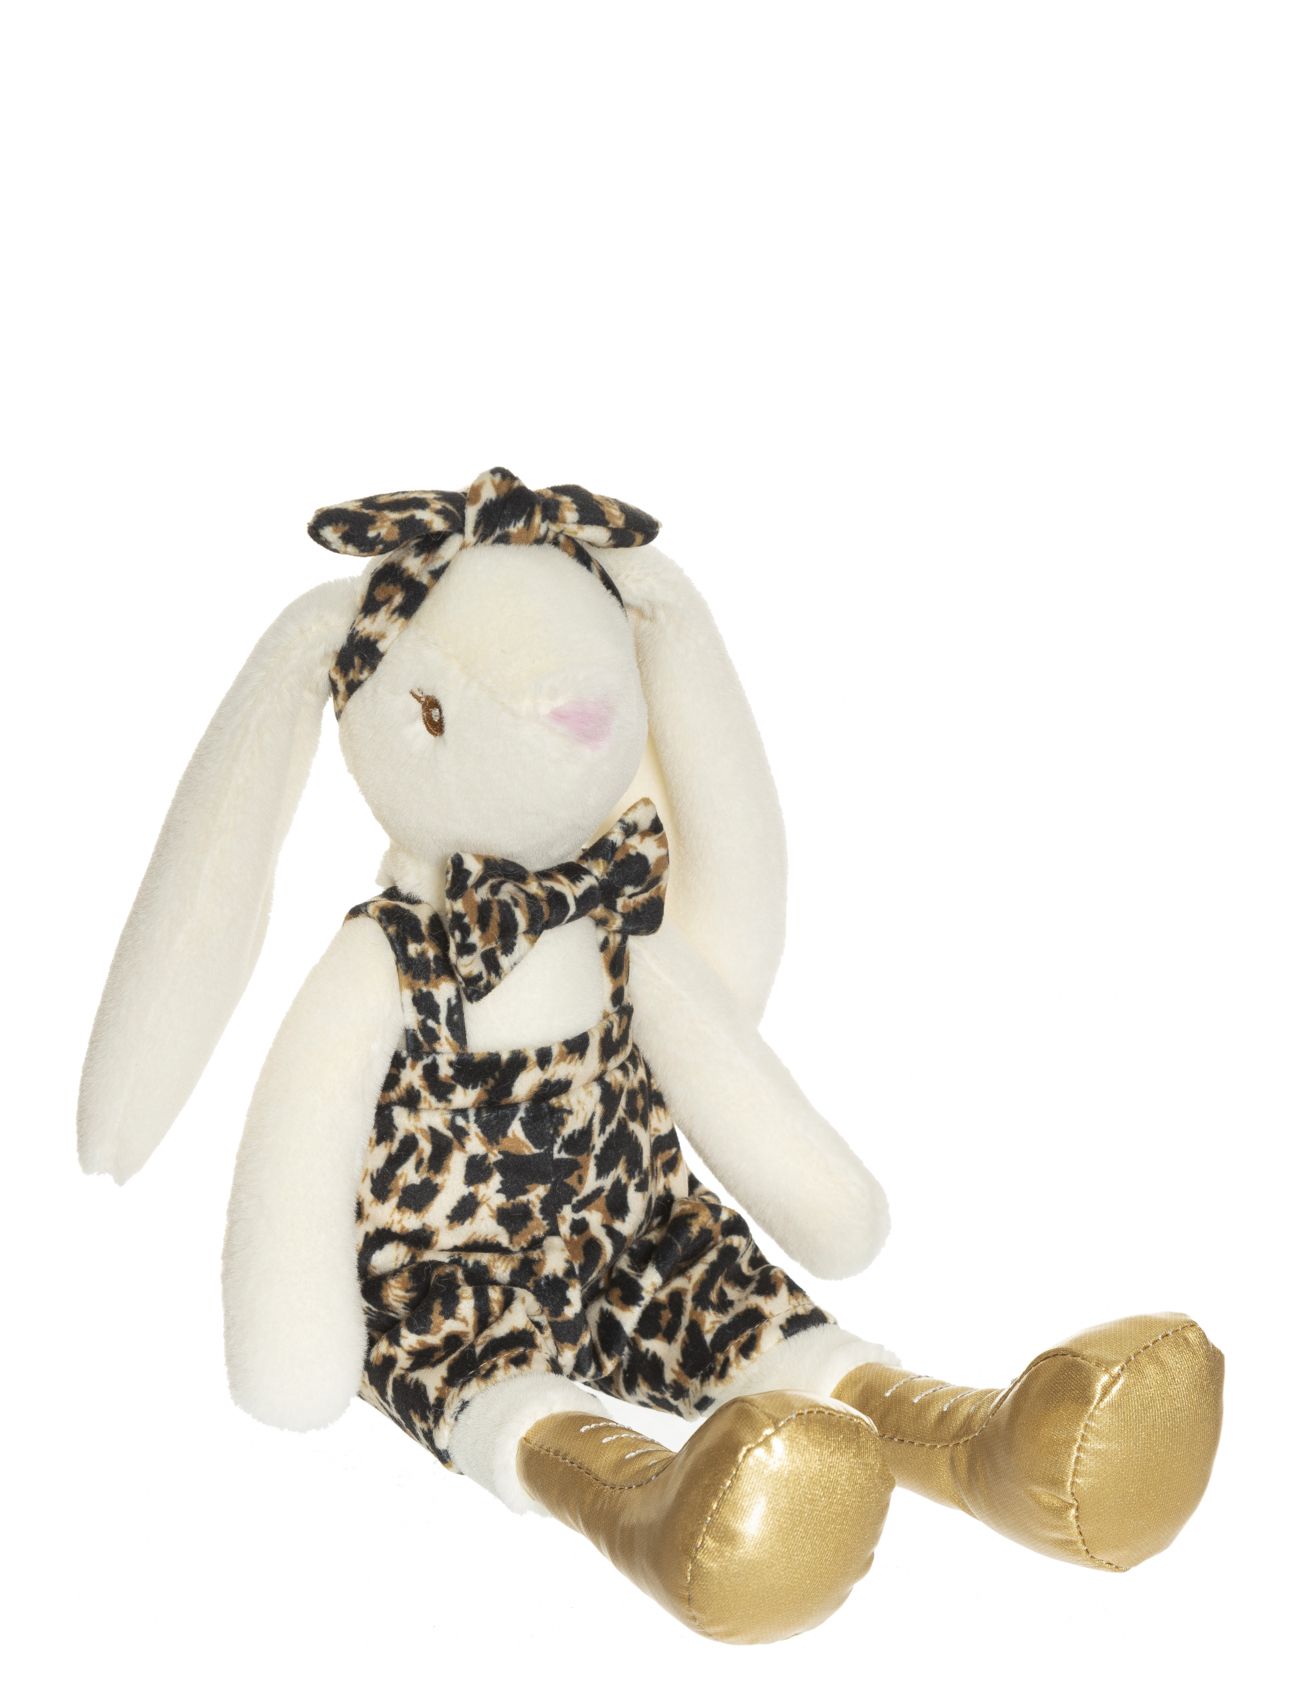 Louise, Leopard Pattern Toys Soft Toys Stuffed Animals Multi/mönstrad Teddykompaniet